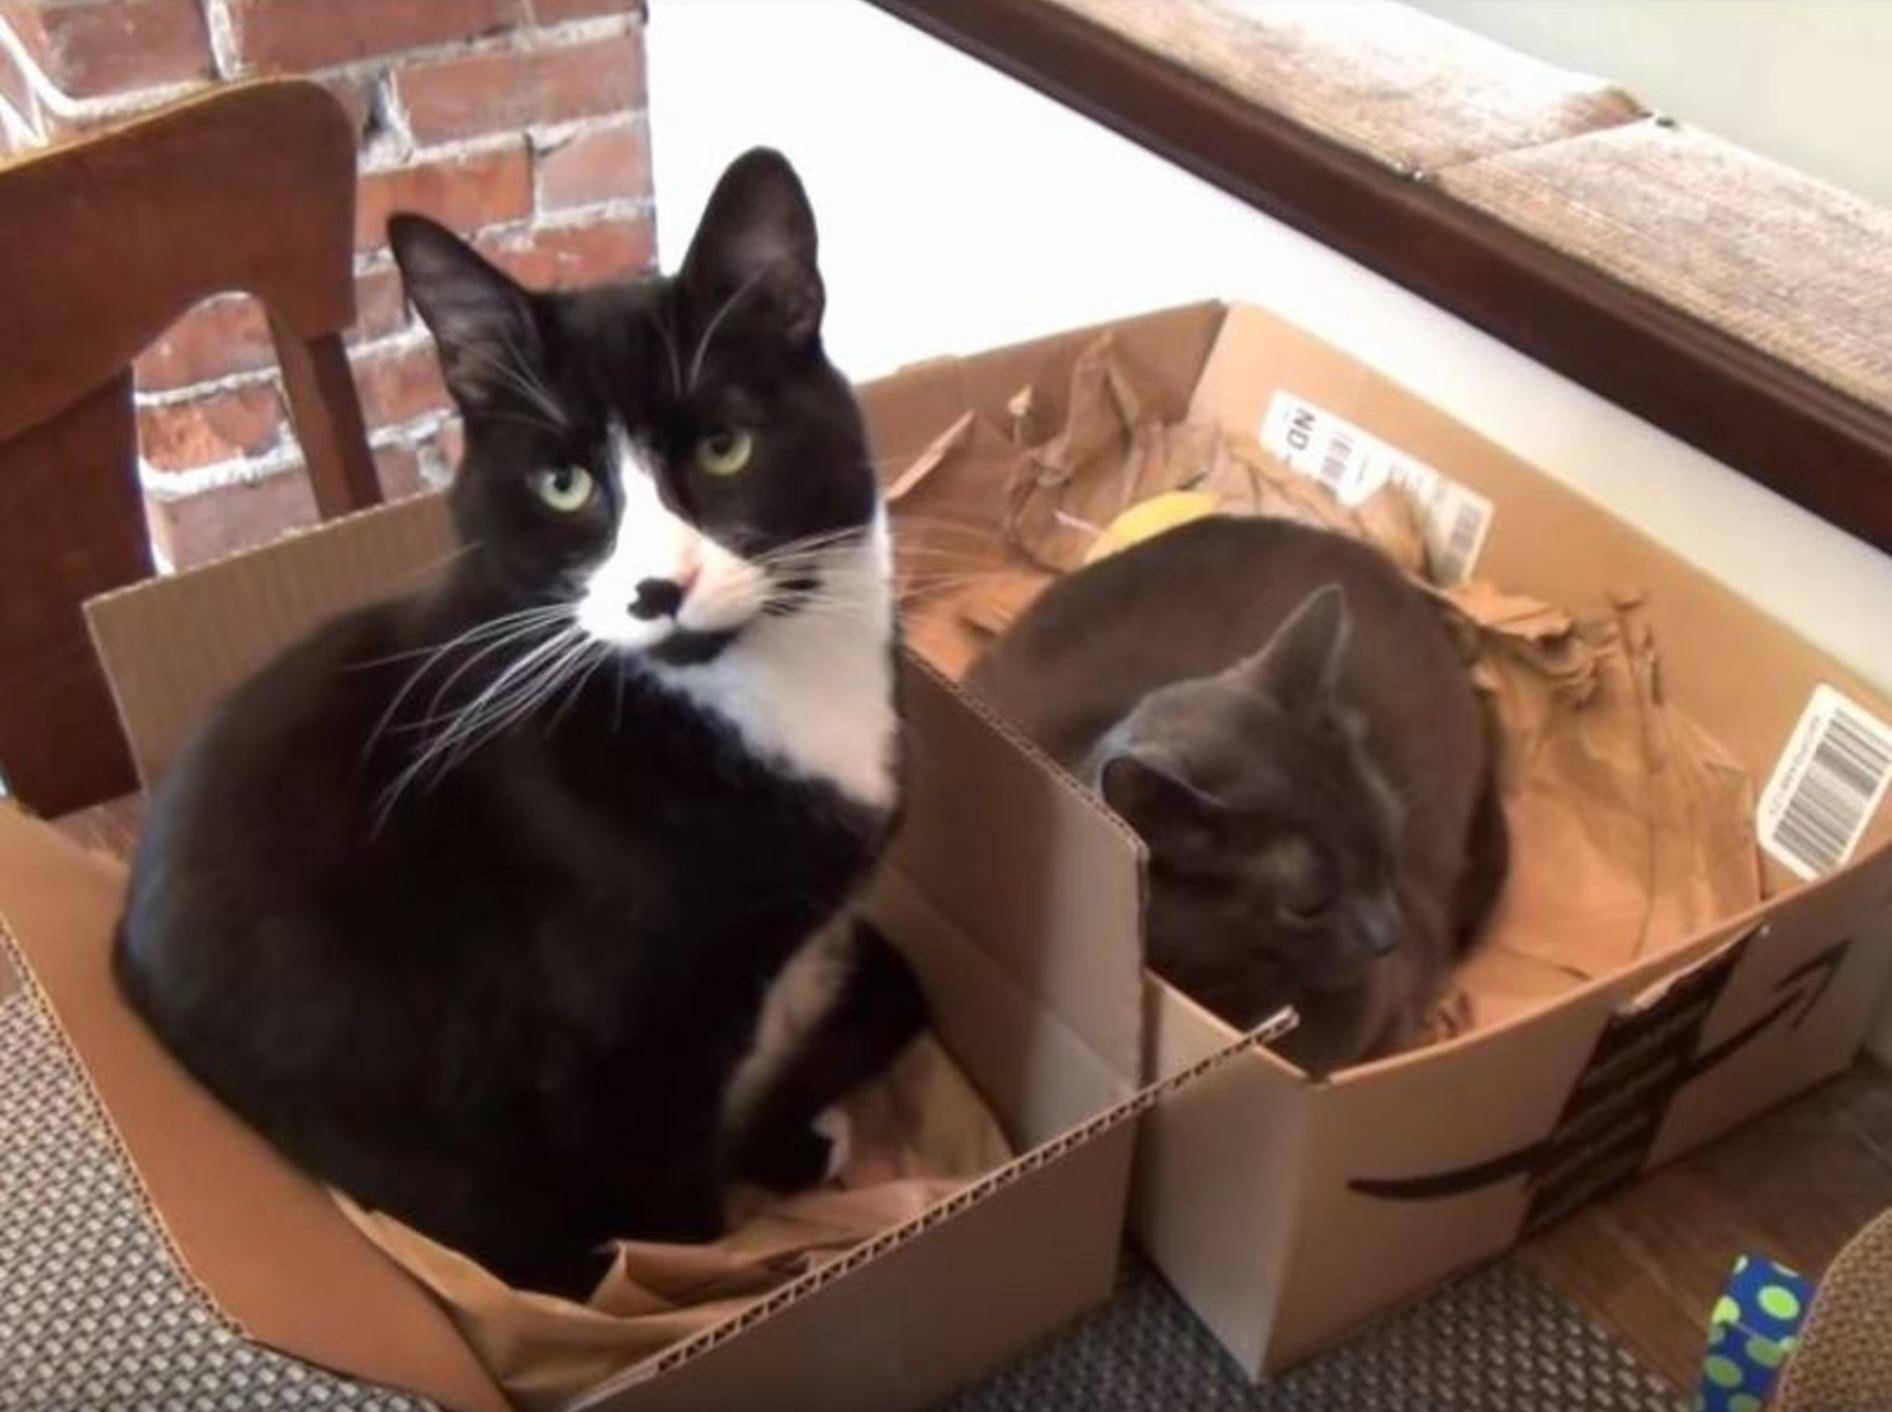 Katzen und Kartons: Eine Liebesgeschichte – YouTube / The Kits Cats